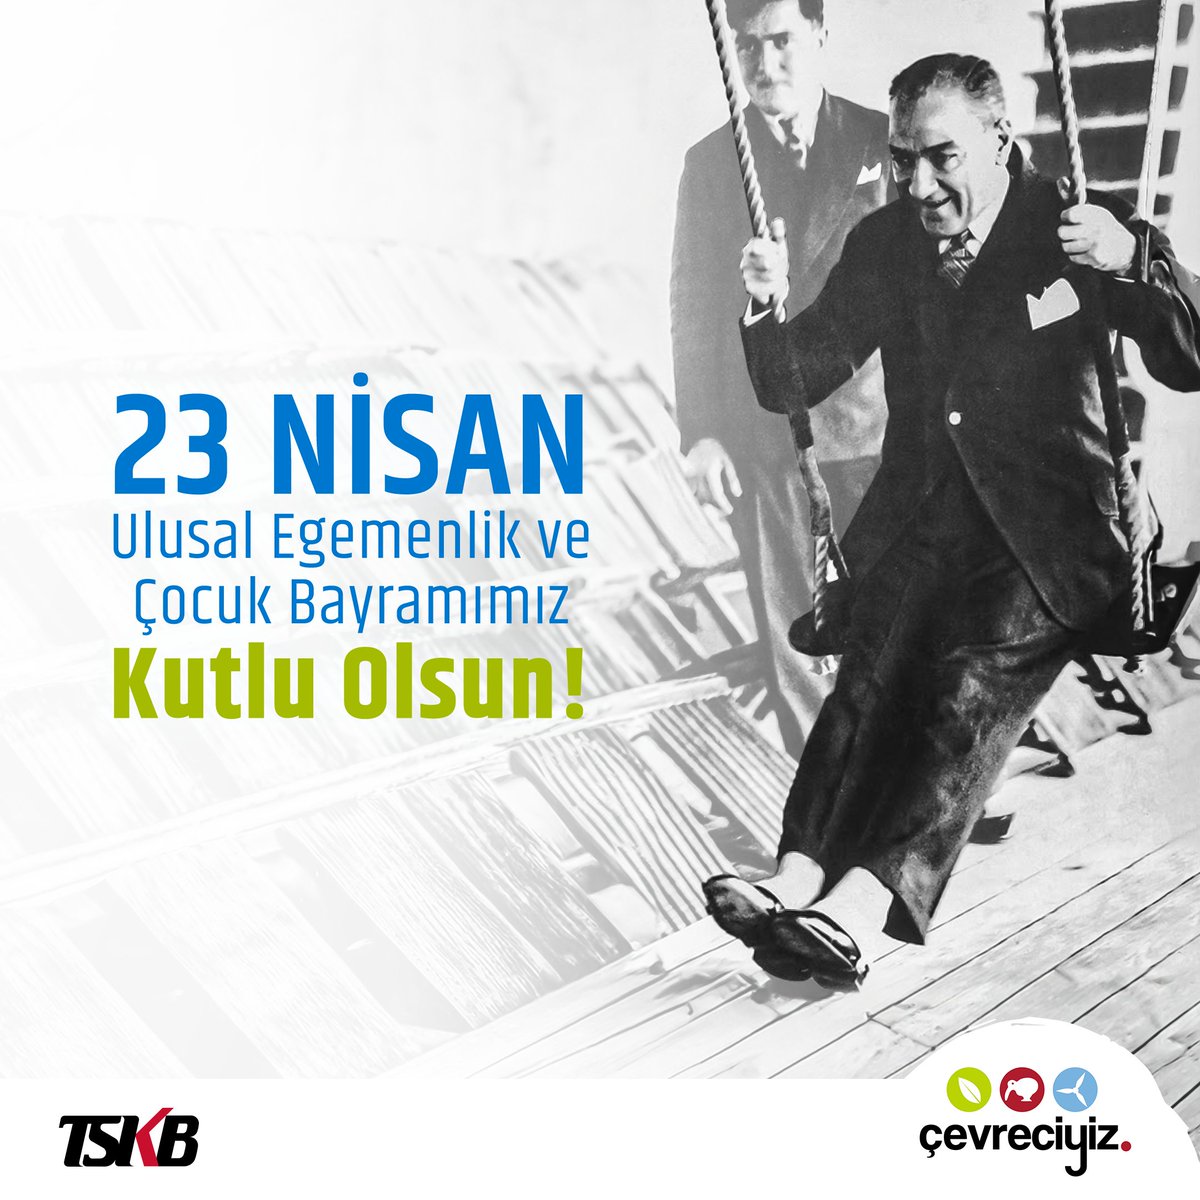 Geleceği çocuklara armağan eden Mustafa Kemal Atatürk’ün izinde, bir gün değil, her gün 23 Nisan olsun. Ulusal Egemenlik ve Çocuk Bayramımız kutlu olsun! #Çevreciyiz #23Nisan #23NisanUlusalEgemenlikveÇocukBayramı #MustafaKemalAtatürk